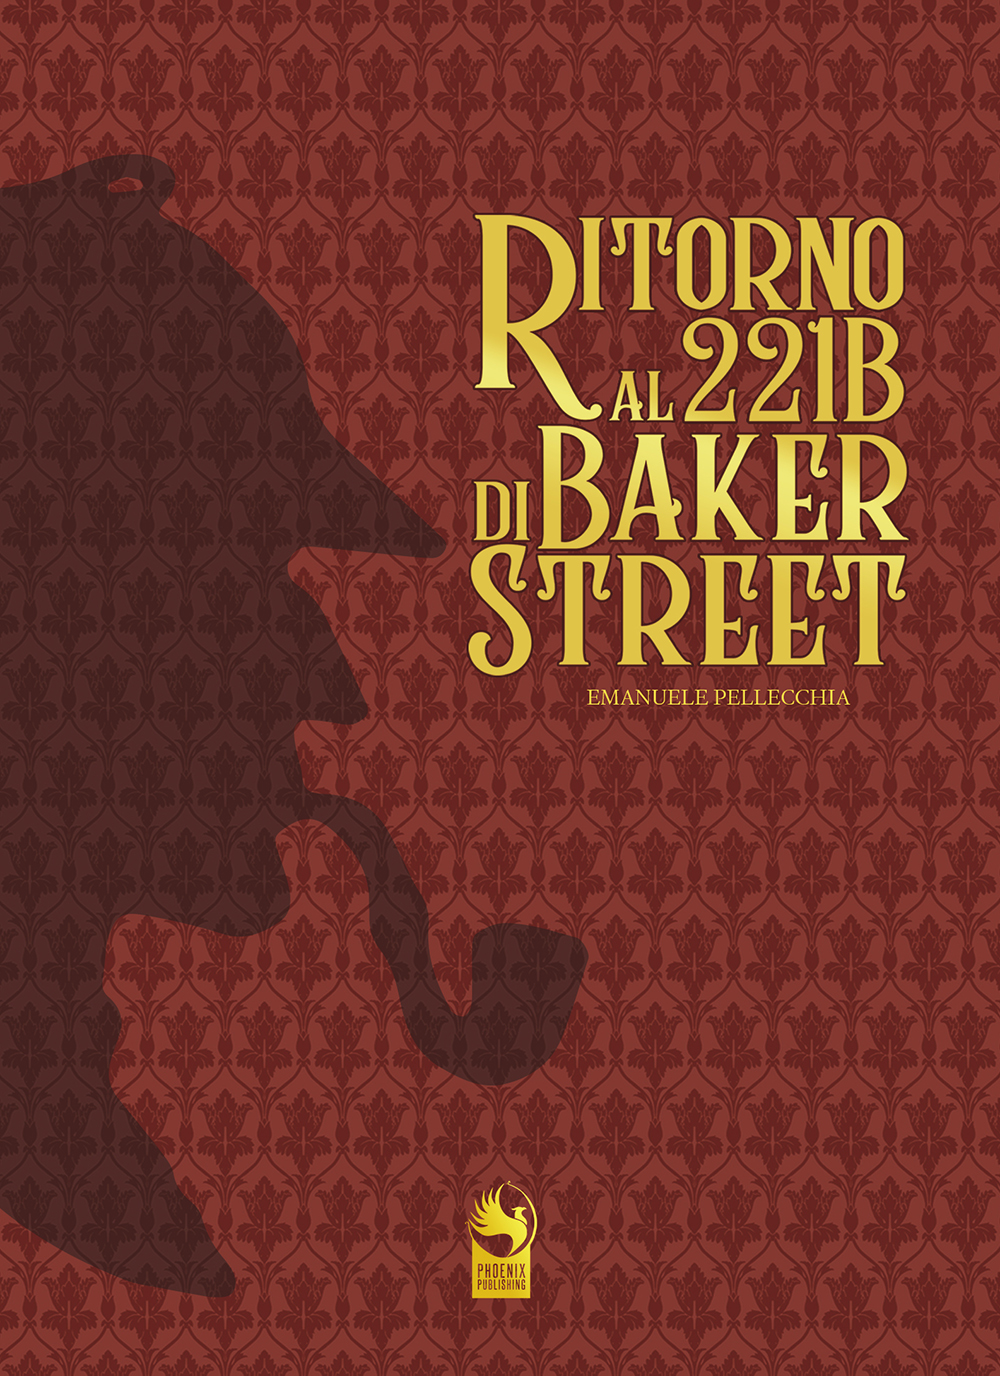 “Ritorno al 221B di Baker Street”. Di nuovo in libreria l’edizione speciale numerata del romanzo di Emanuele Pellecchia. Phoenix Publishing